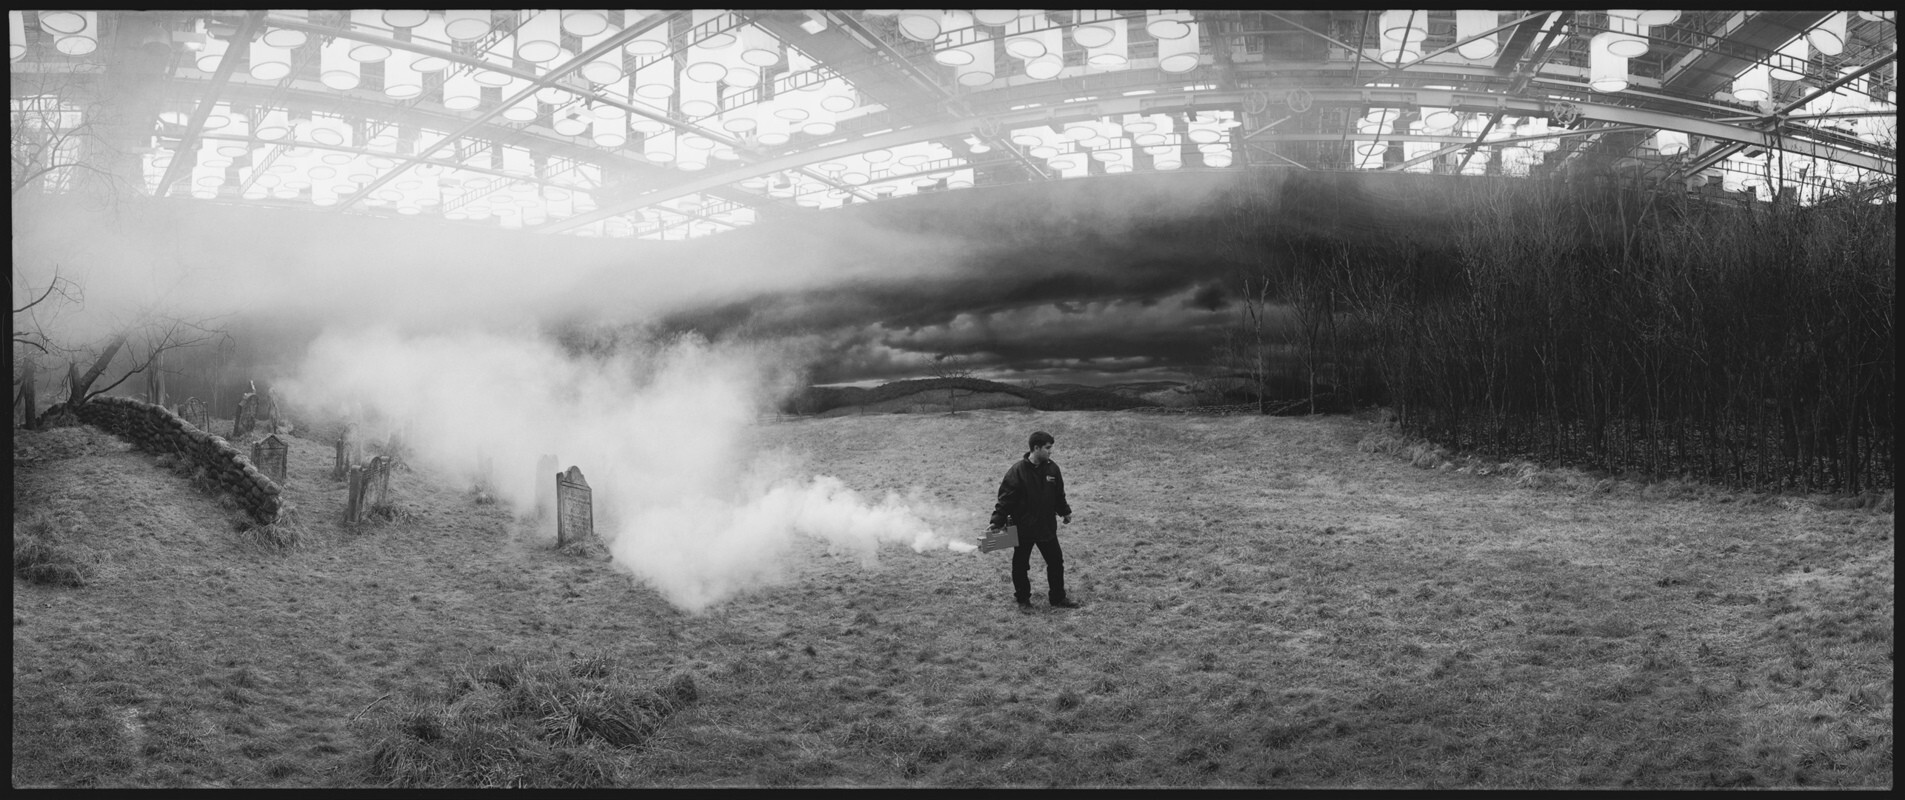 Декорации с туманом. Сонная лощина, Англия, 1999 г. За кулисами. Фотограф Мэри Эллен Марк